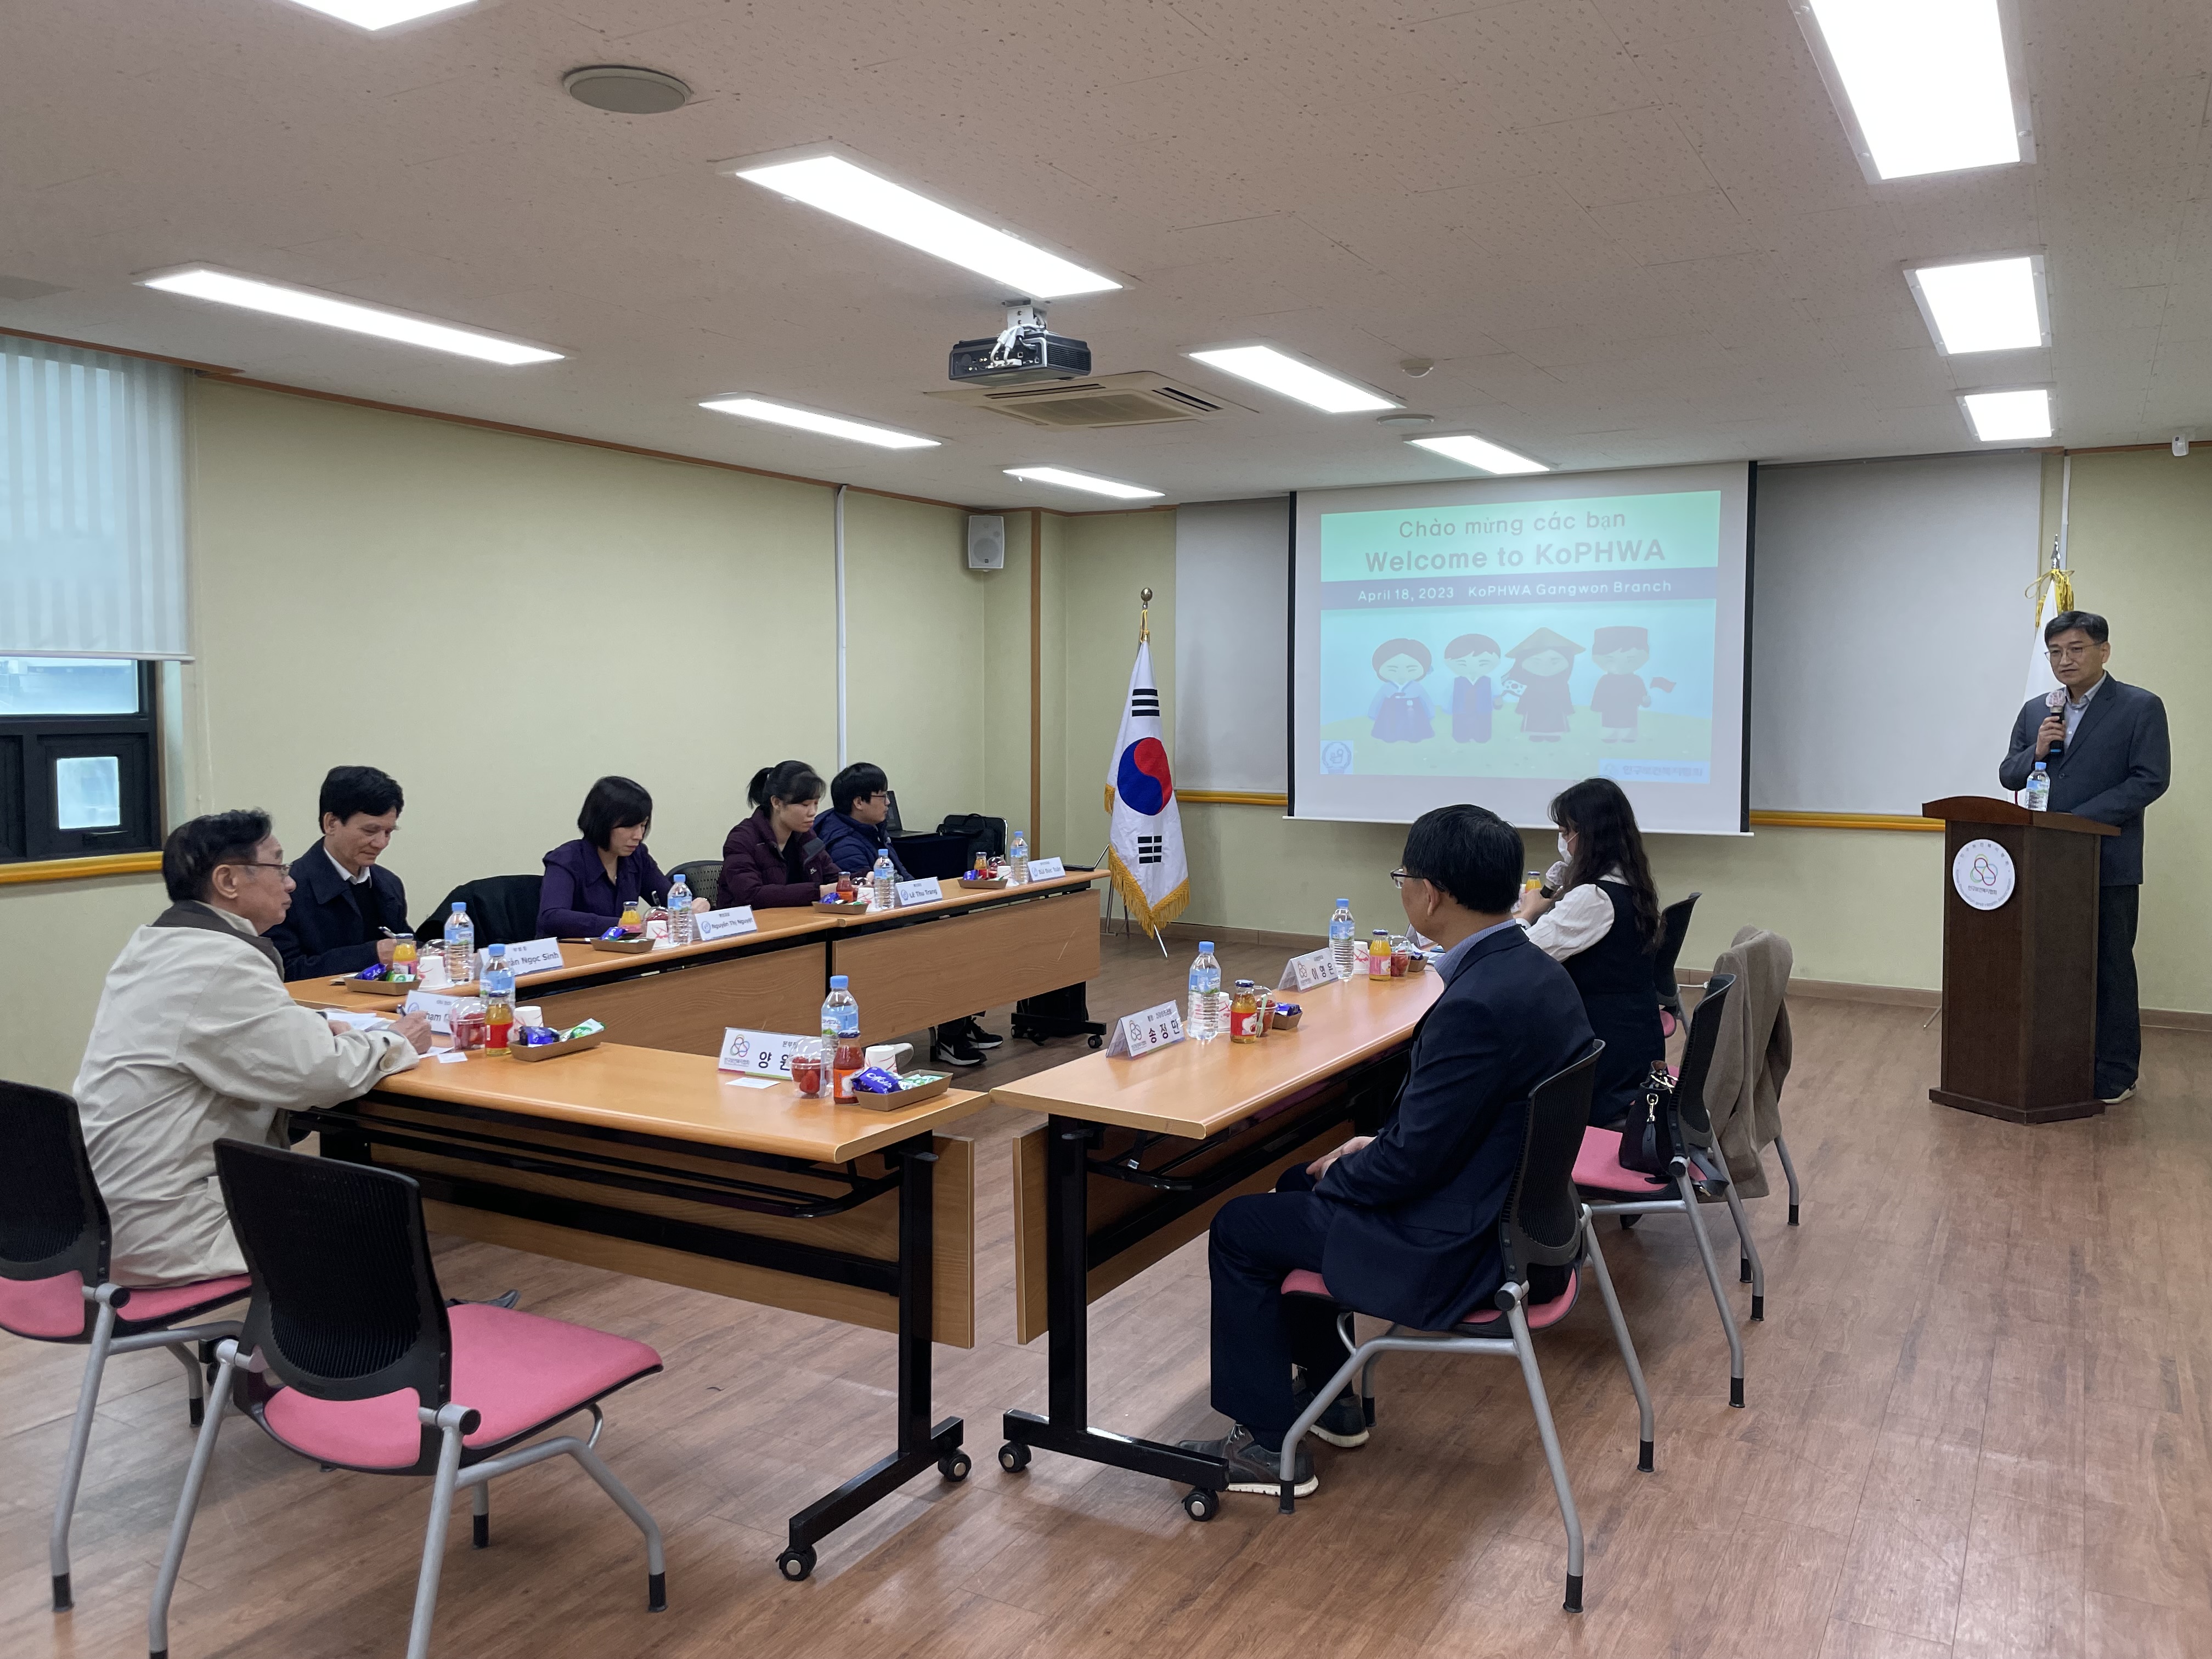 한국과 베트남 국가가 인구성 재생산 건강 분야 기술교류 확대 및 개발협력 플랫폼 구축을 위해 회의를 하고있는 사진이다.